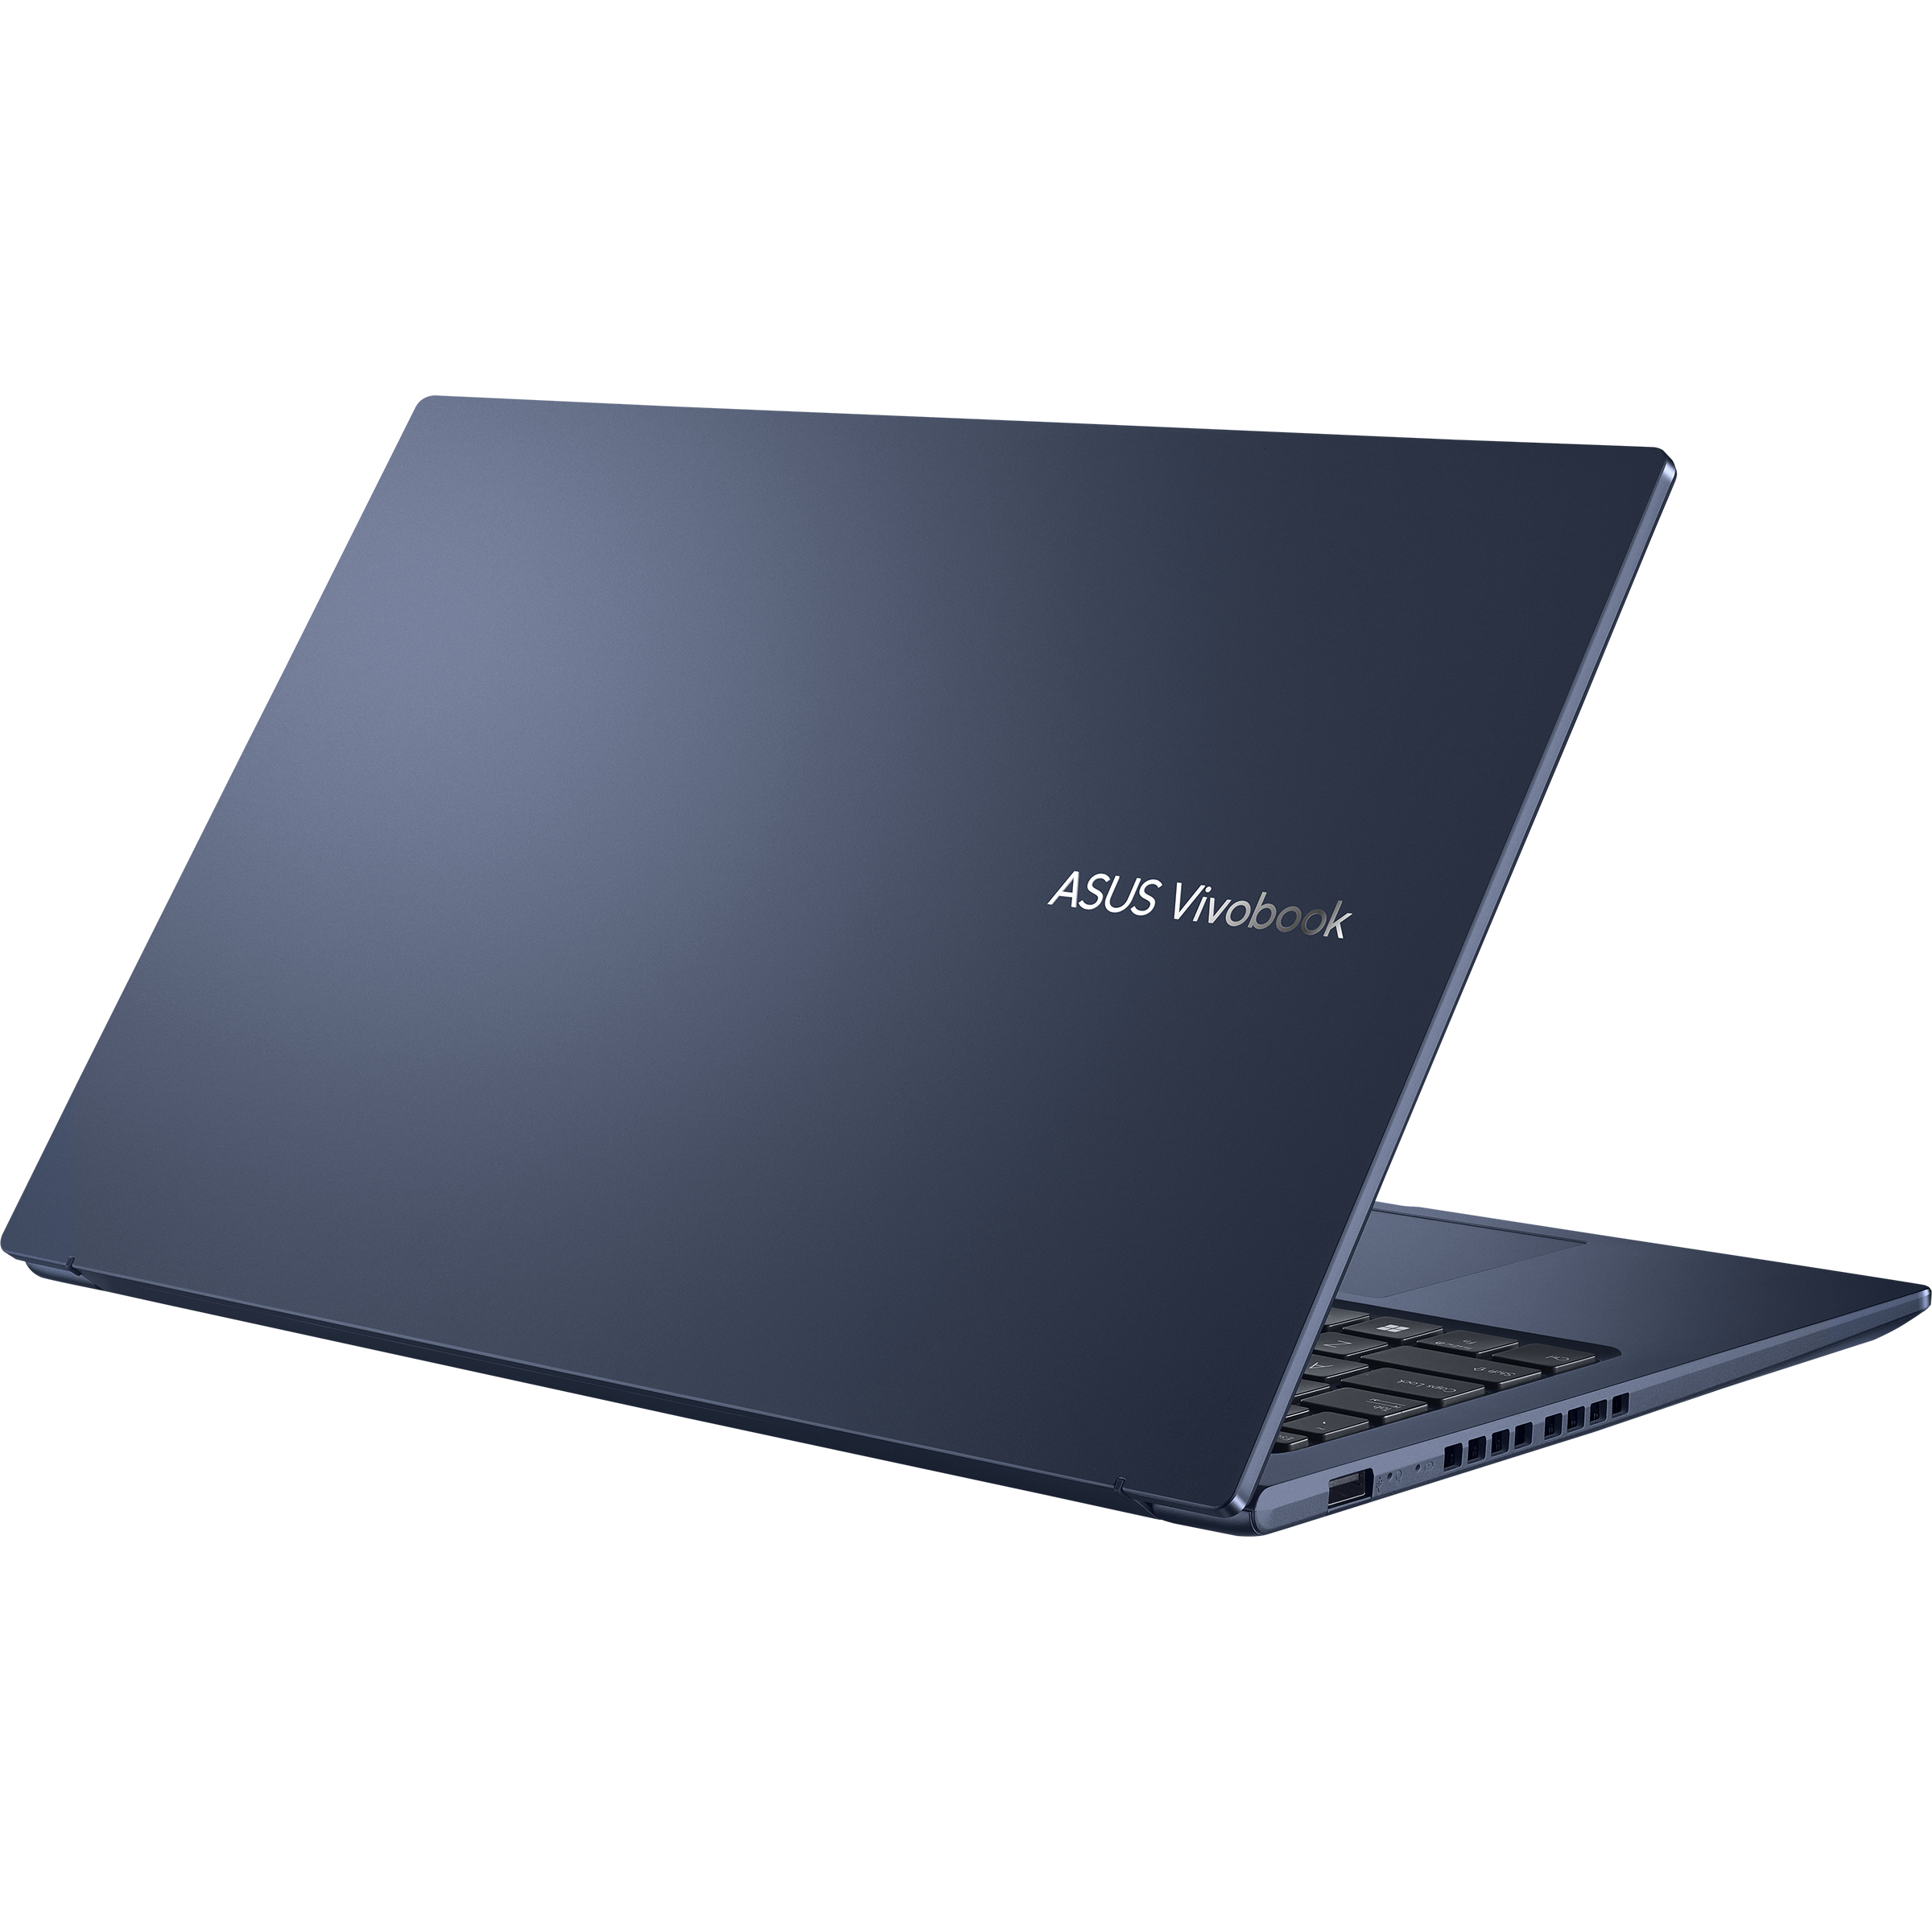 Vivobook 15X OLED (M1503, AMD Ryzen 5000 series)｜Laptops For Home